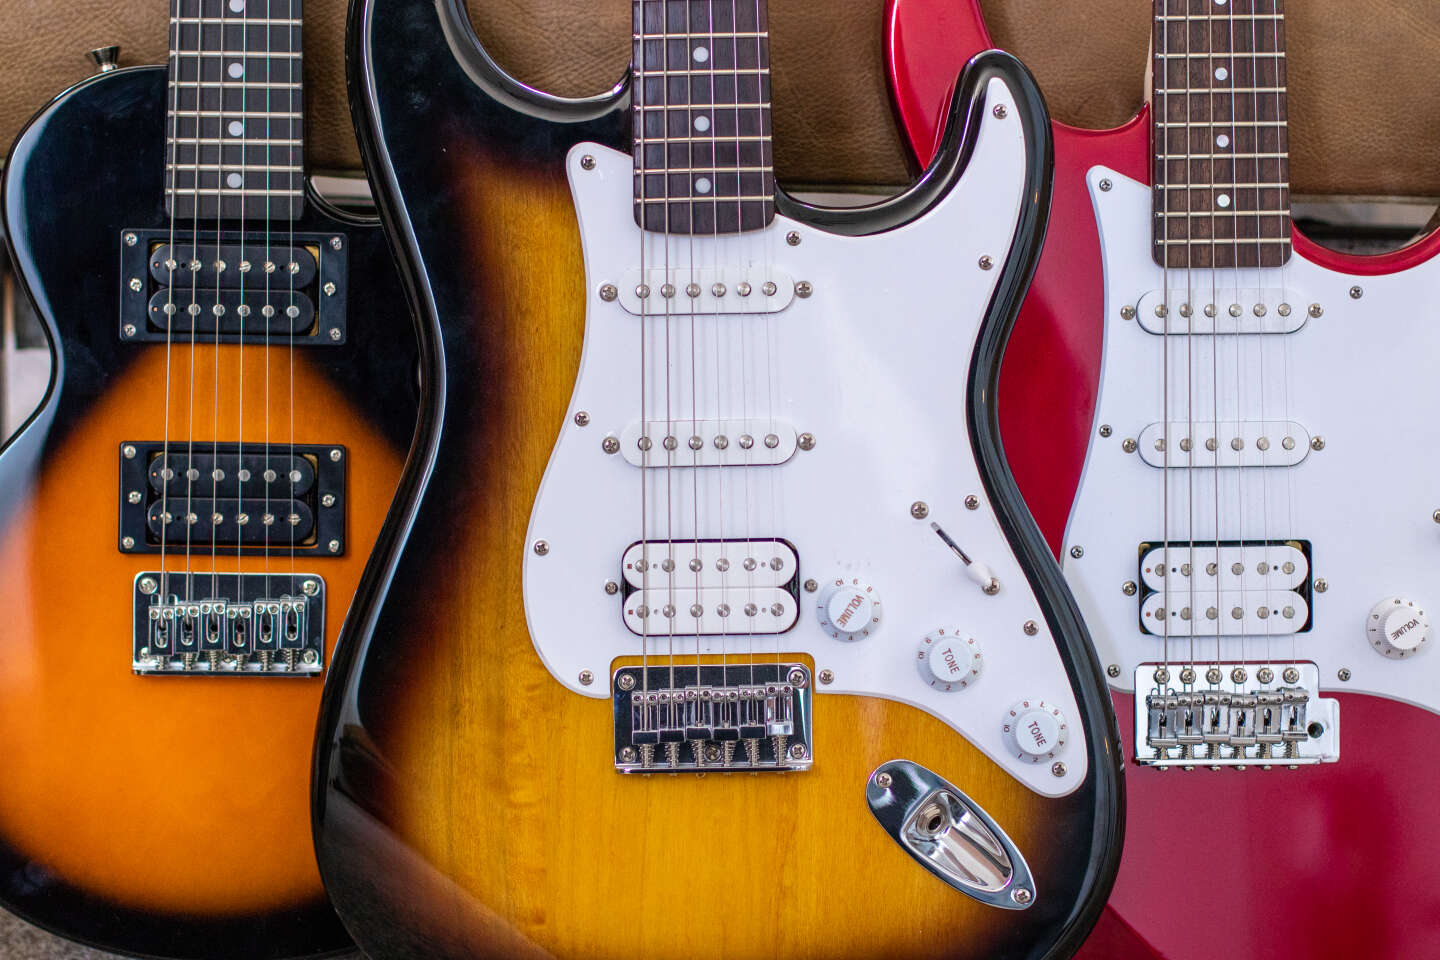 Top 5 Guitares Électriques de 2021 – t.blog